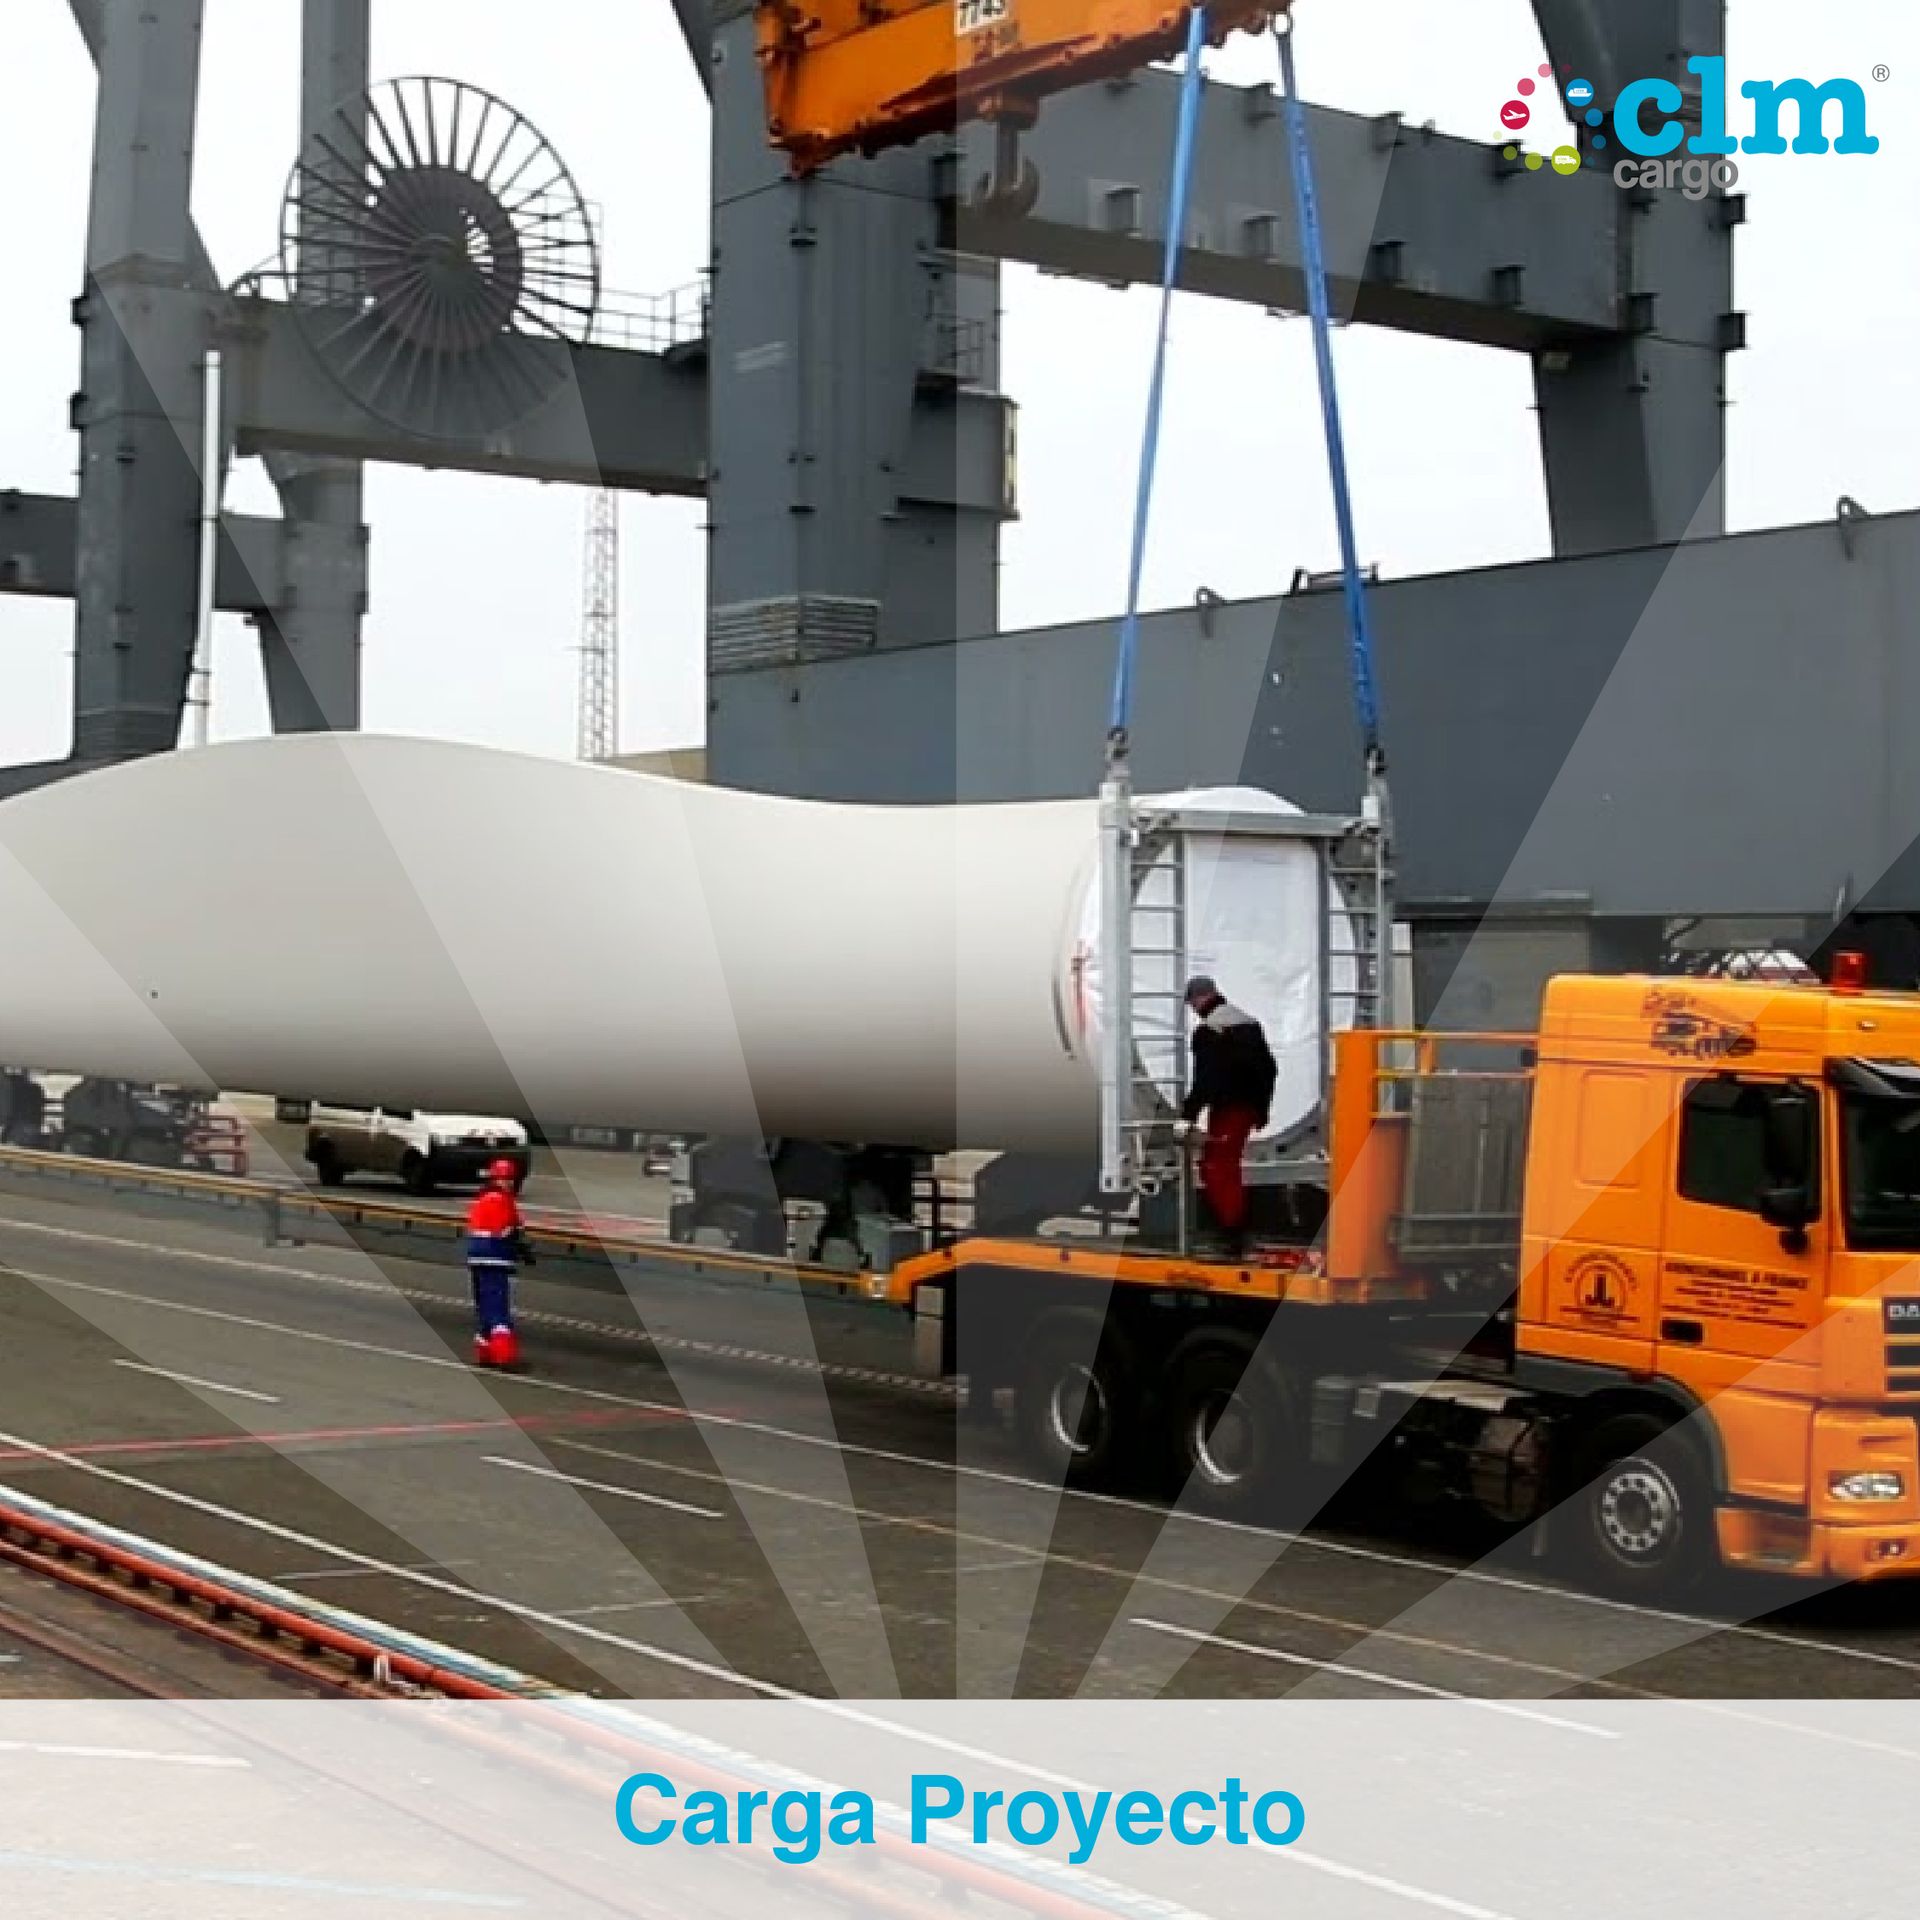 CLM Cargo Carga proyecto
